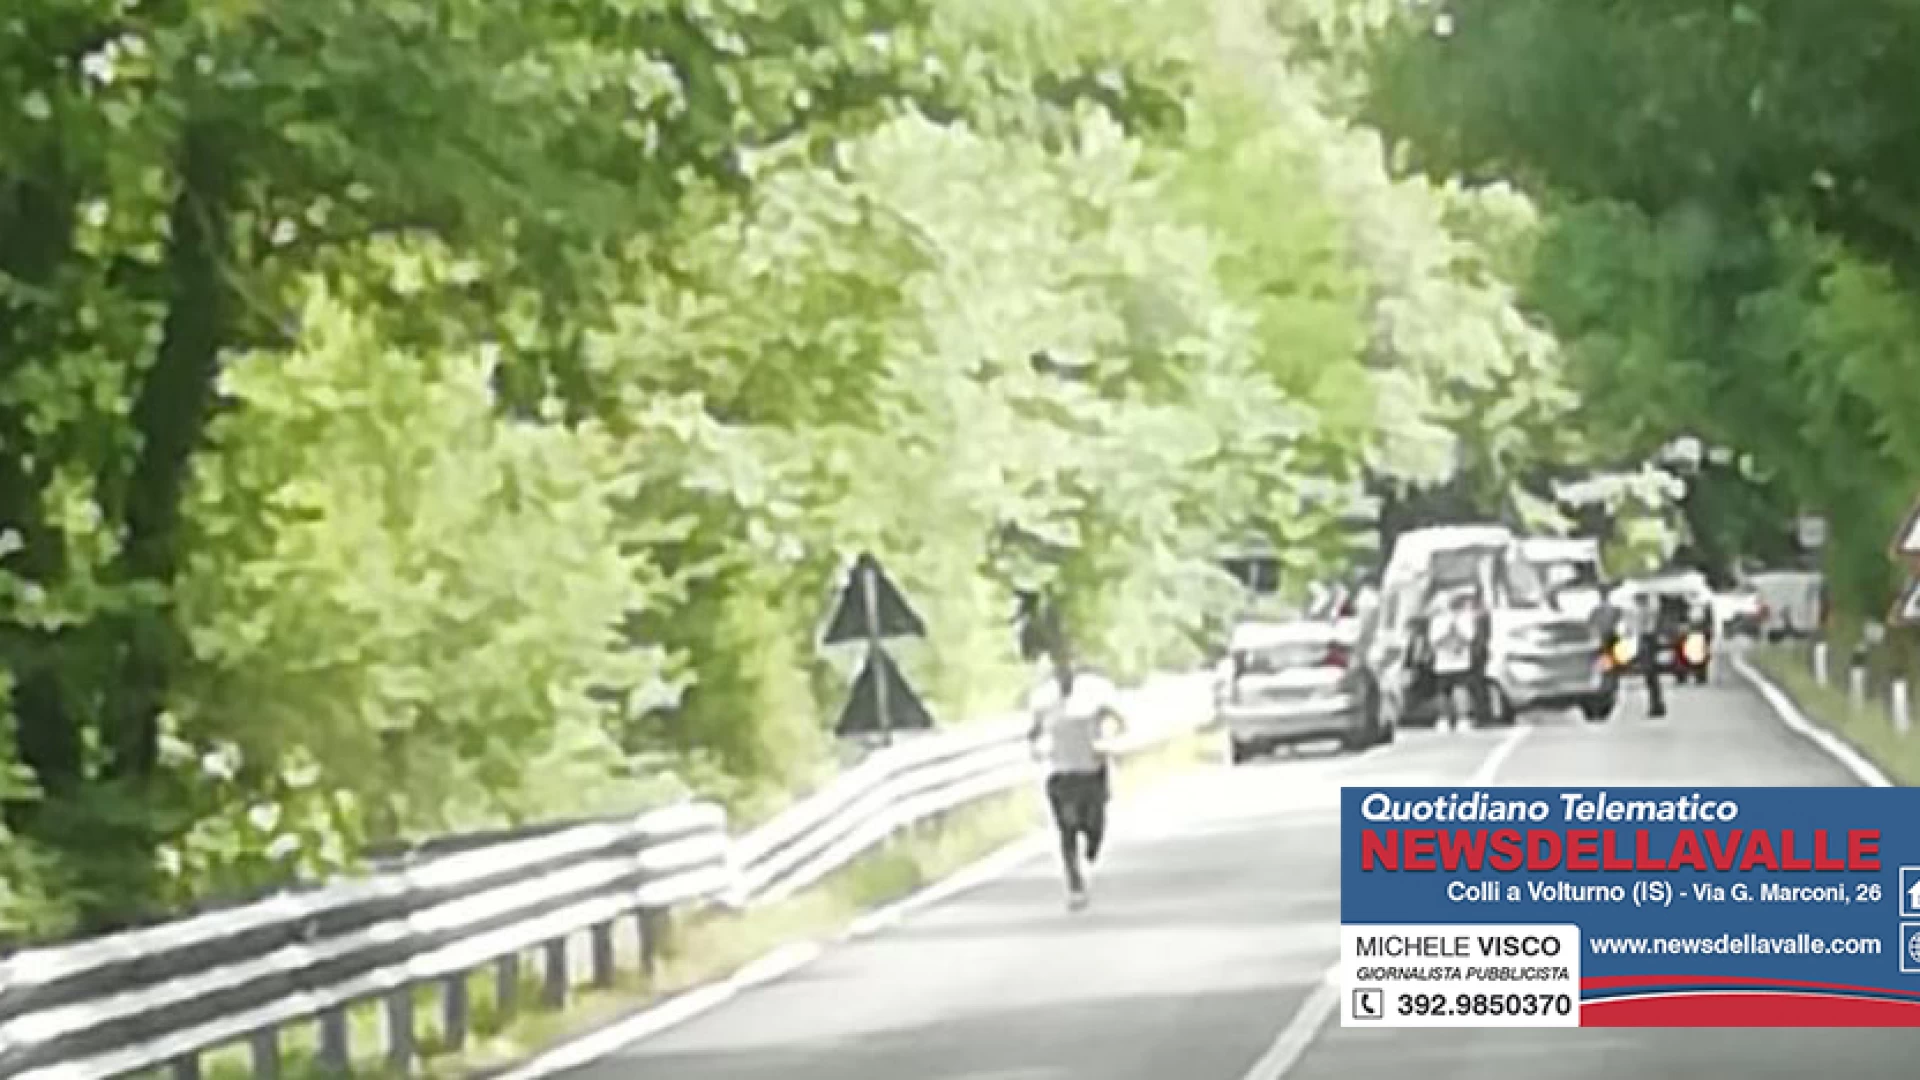 Colli a Volturno: violento scontro tra due autovetture sulla statale 158. Soccorsi in atto. Sul posto 118 e Carabinieri.